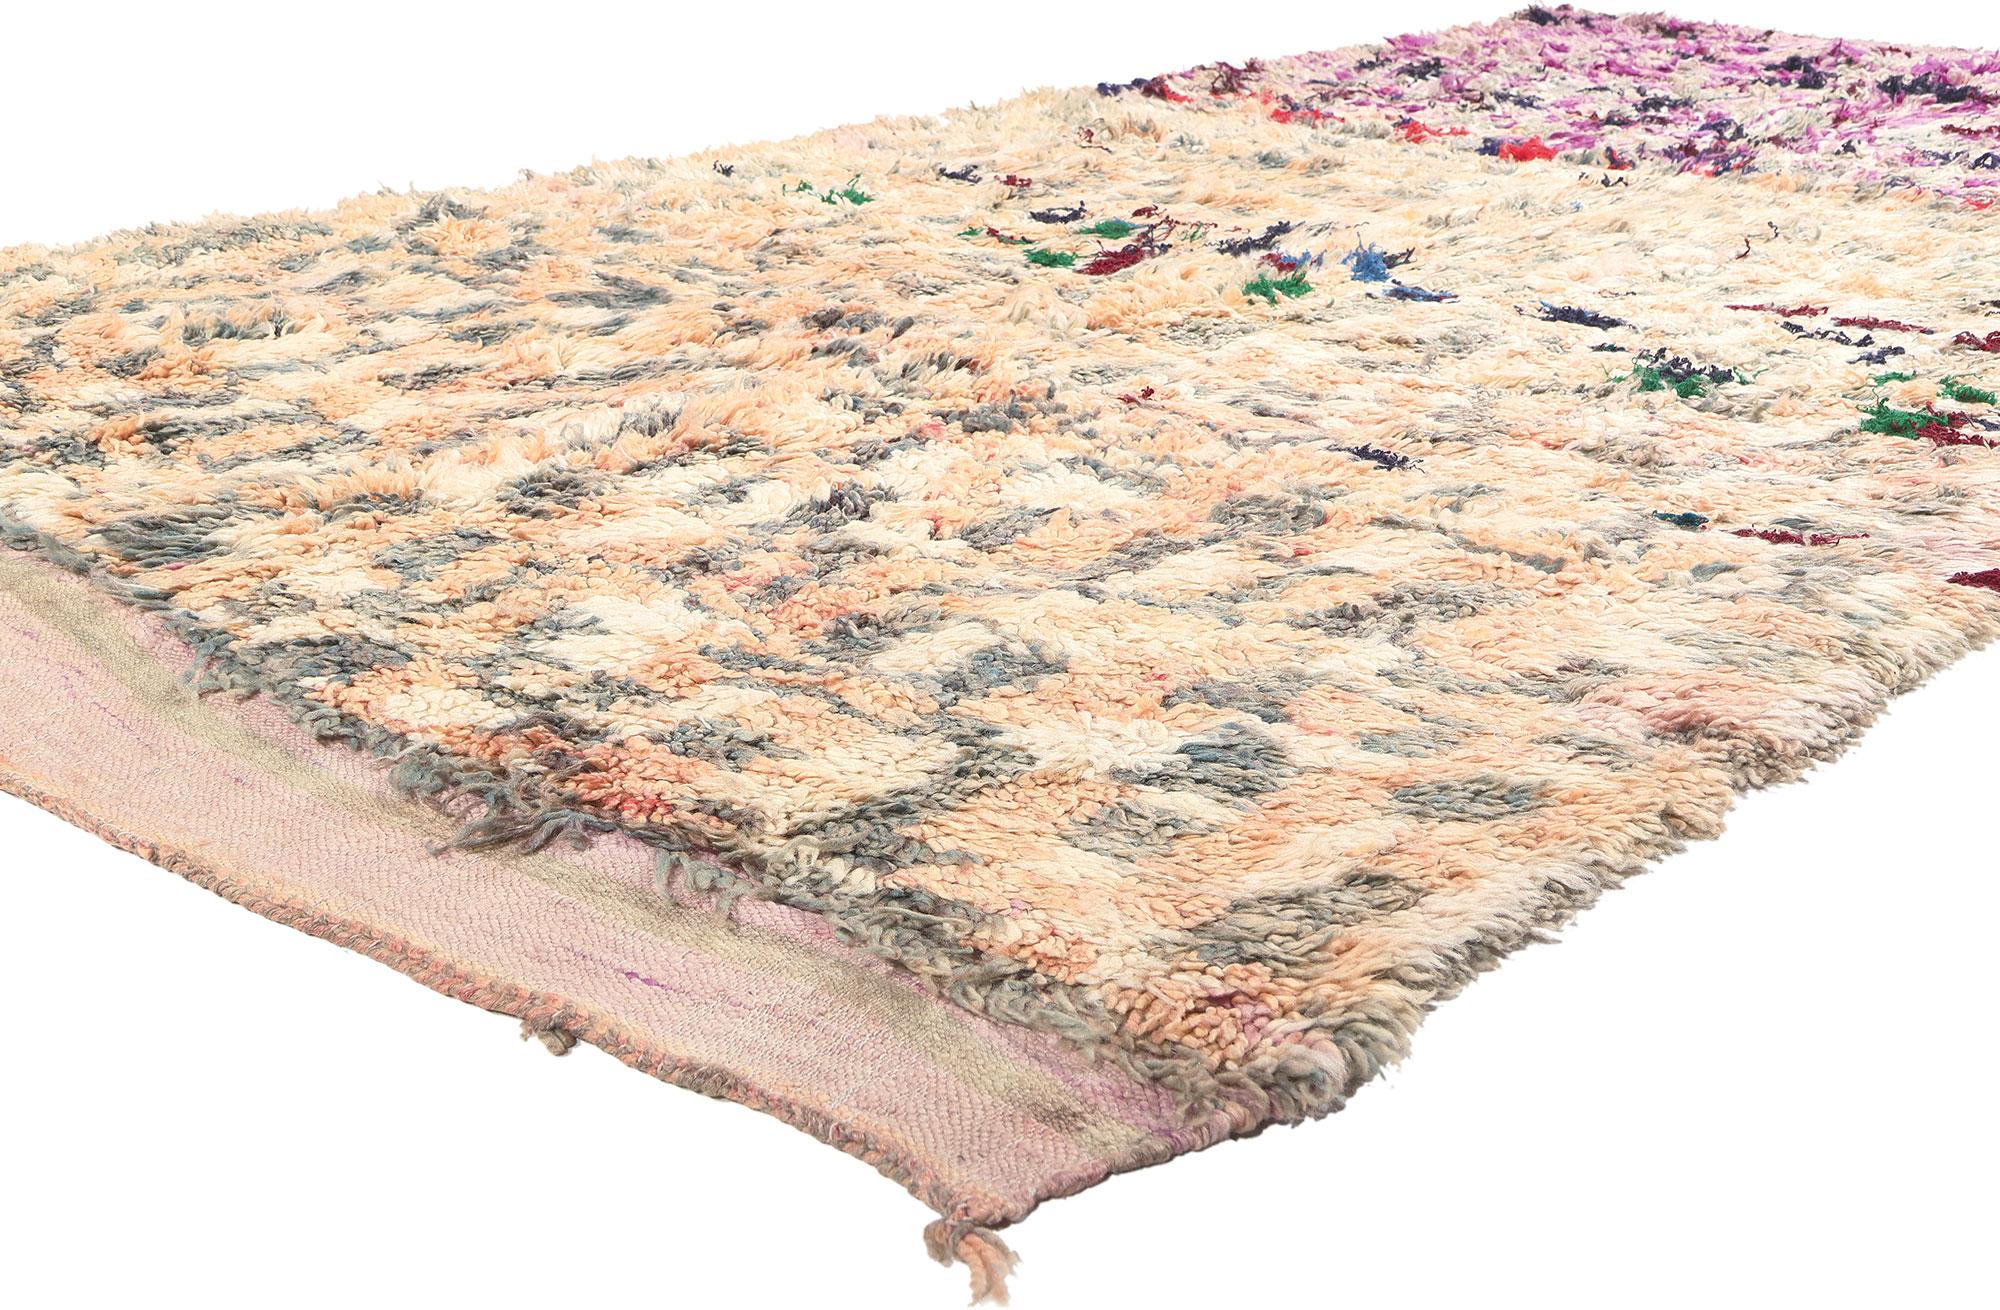 20518 Tapis marocain Vintage Boujad, 06'00 x 10'04. Les tapis de Boujad, originaires de la ville dynamique de Boujad dans la région de Khouribga, sont réputés pour leurs motifs excentriques et artistiques, mêlant charme primitif, symbolisme ancien